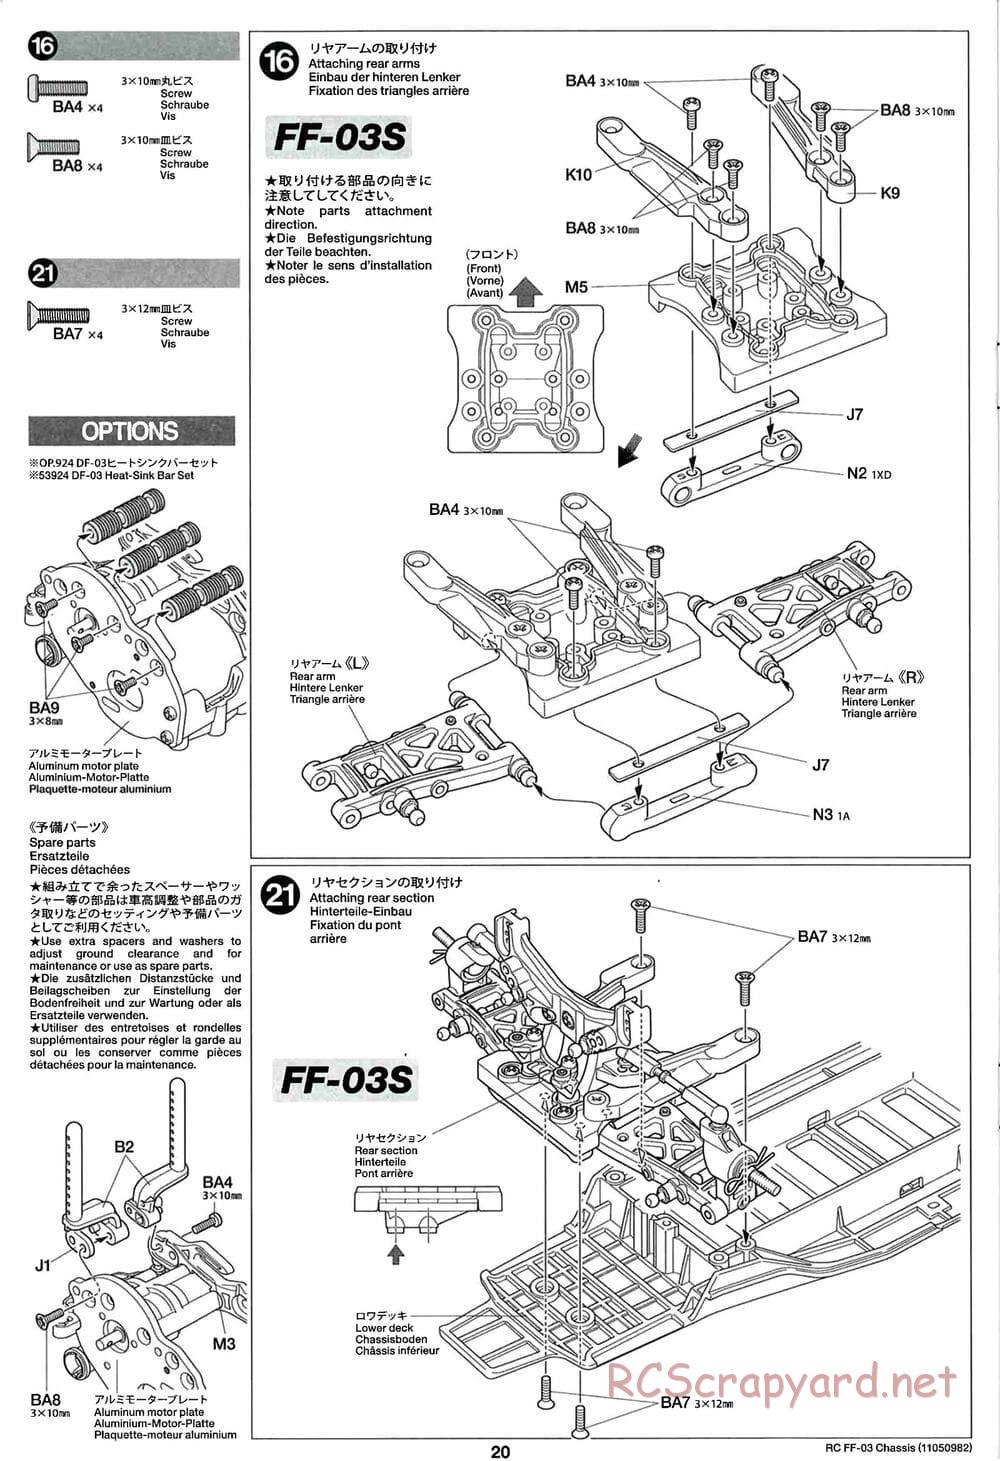 Tamiya - Honda Accord Aero Custom - FF-03 Chassis - Manual - Page 20